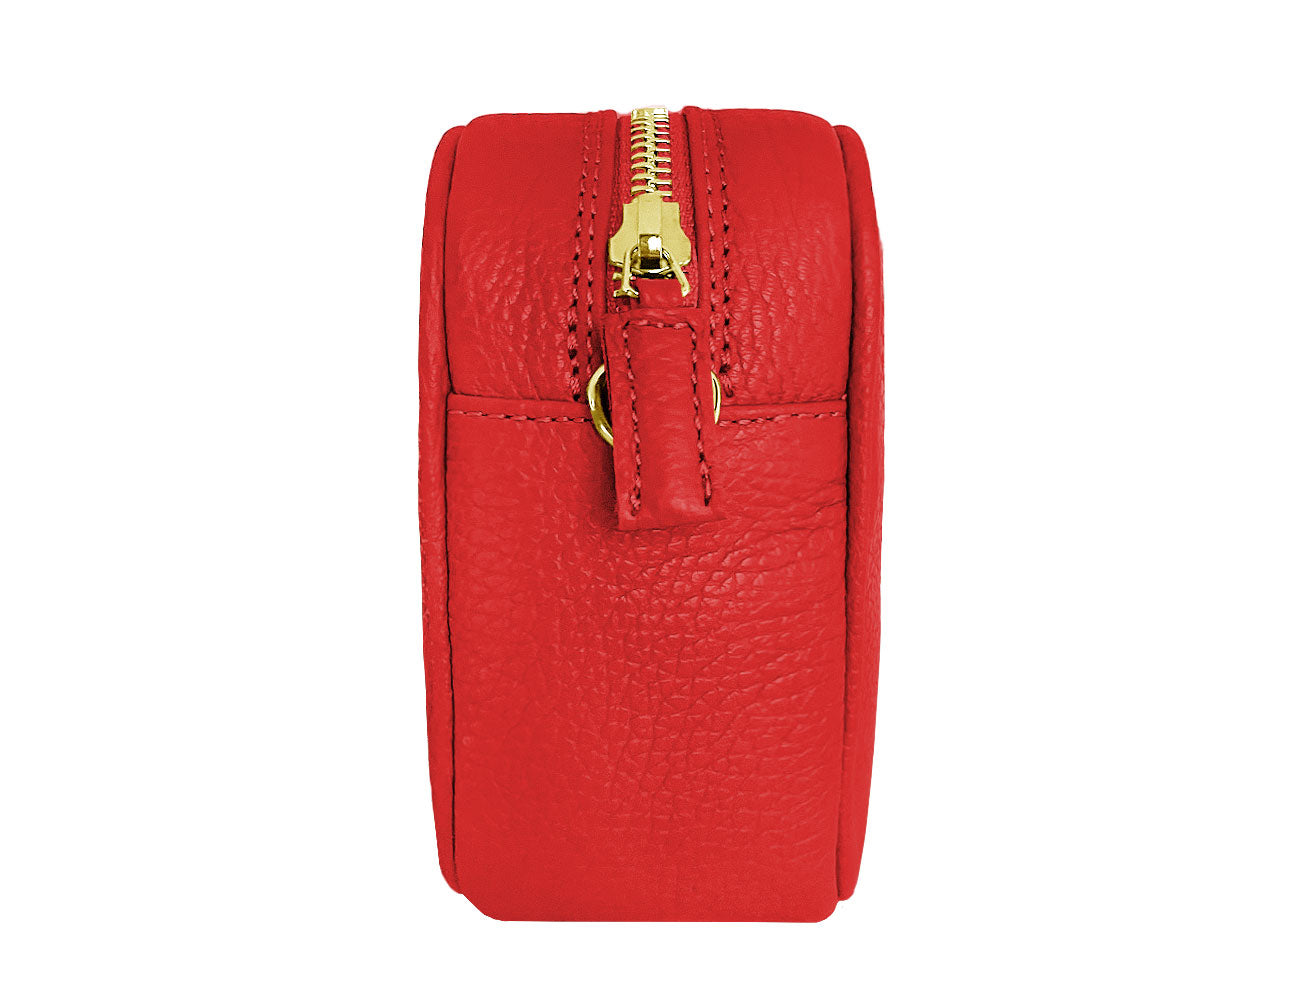 minibag PLUS 2 in rot Edition GOLD, rote Ledertasche, goldene Details, Seitenansicht minibag PLUS 2